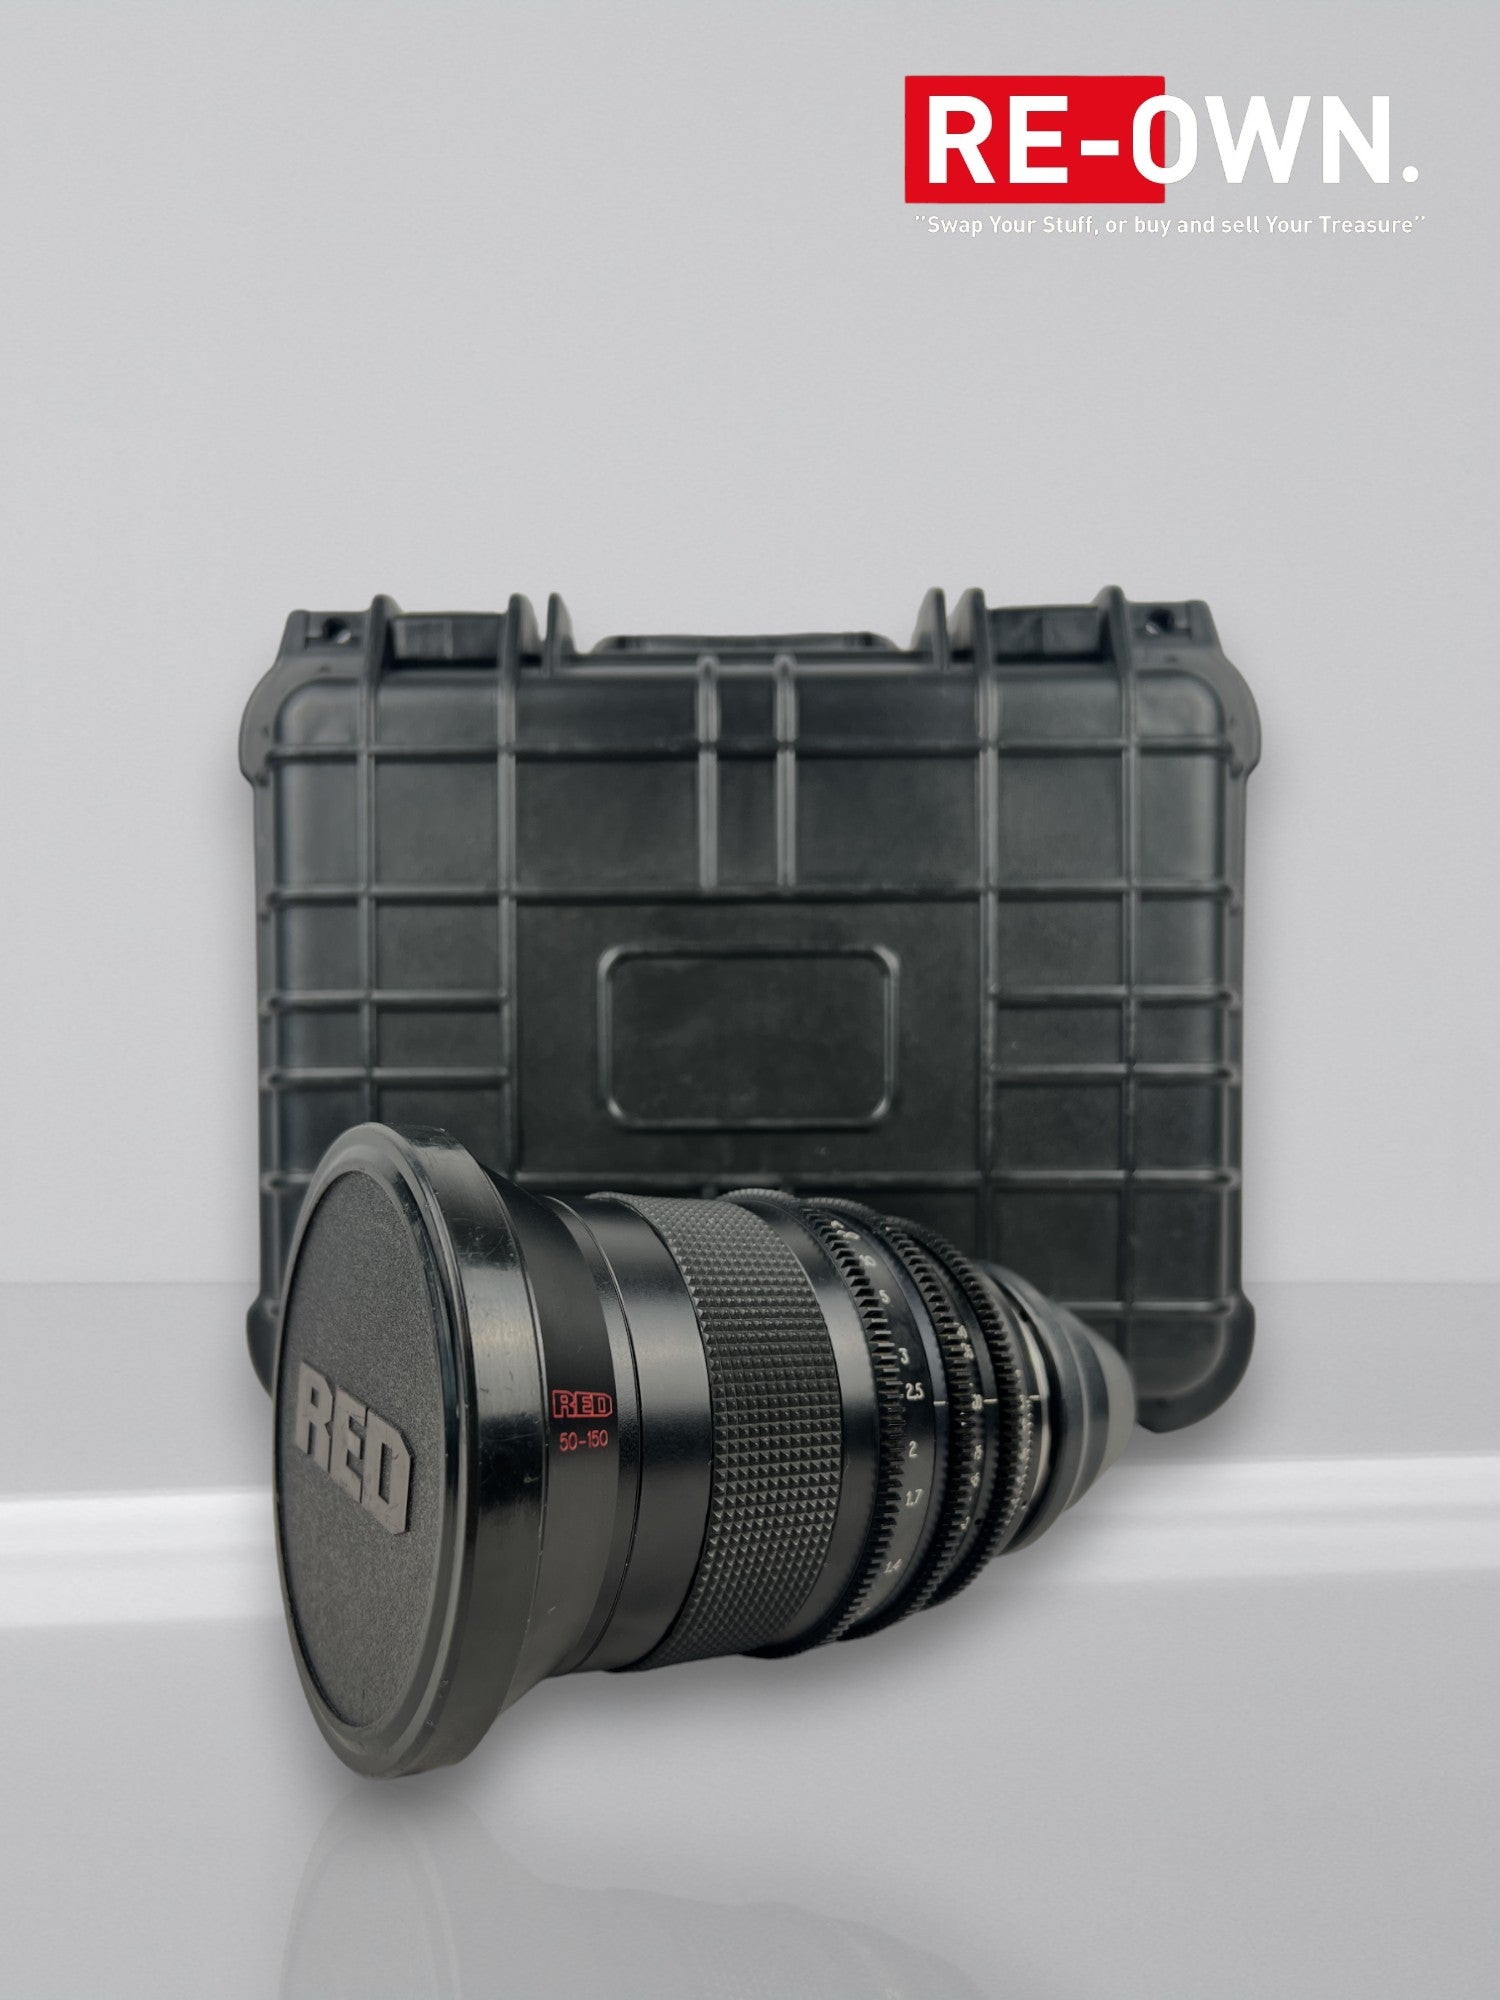 RED Cinema Pro Zoom 50-150mm T3 (F/2.8) Lens PL Mount